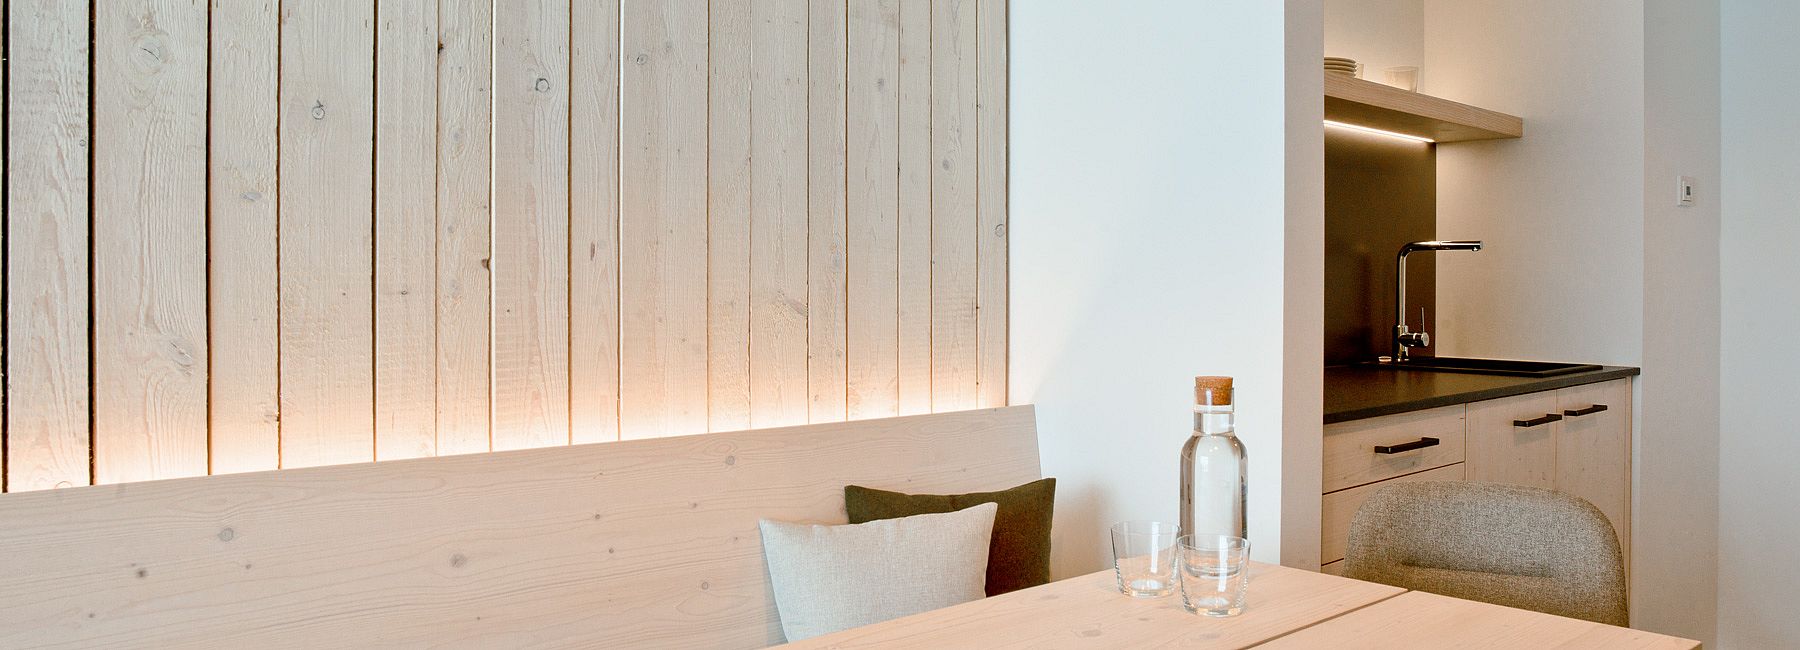 Küchenzeile und Sitzgruppe aus Holz in einer Suite mit holzvertäfelter Wand 